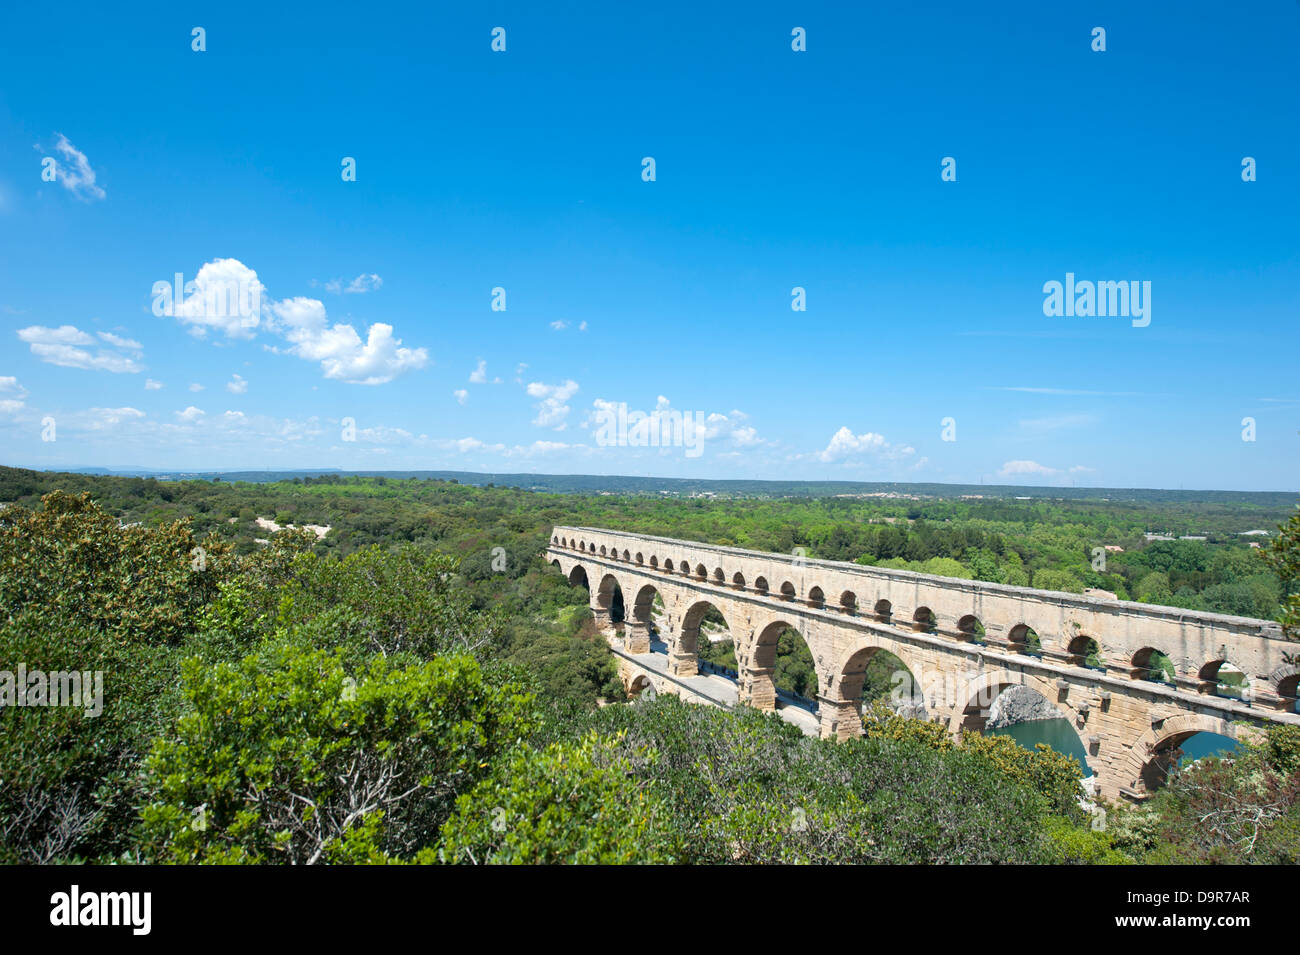 Site du patrimoine mondial de l'Pont du Gard, un aqueduc romain en passant la rivière Gard dans le Gard près de Nîmes, dans le sud de la France Banque D'Images